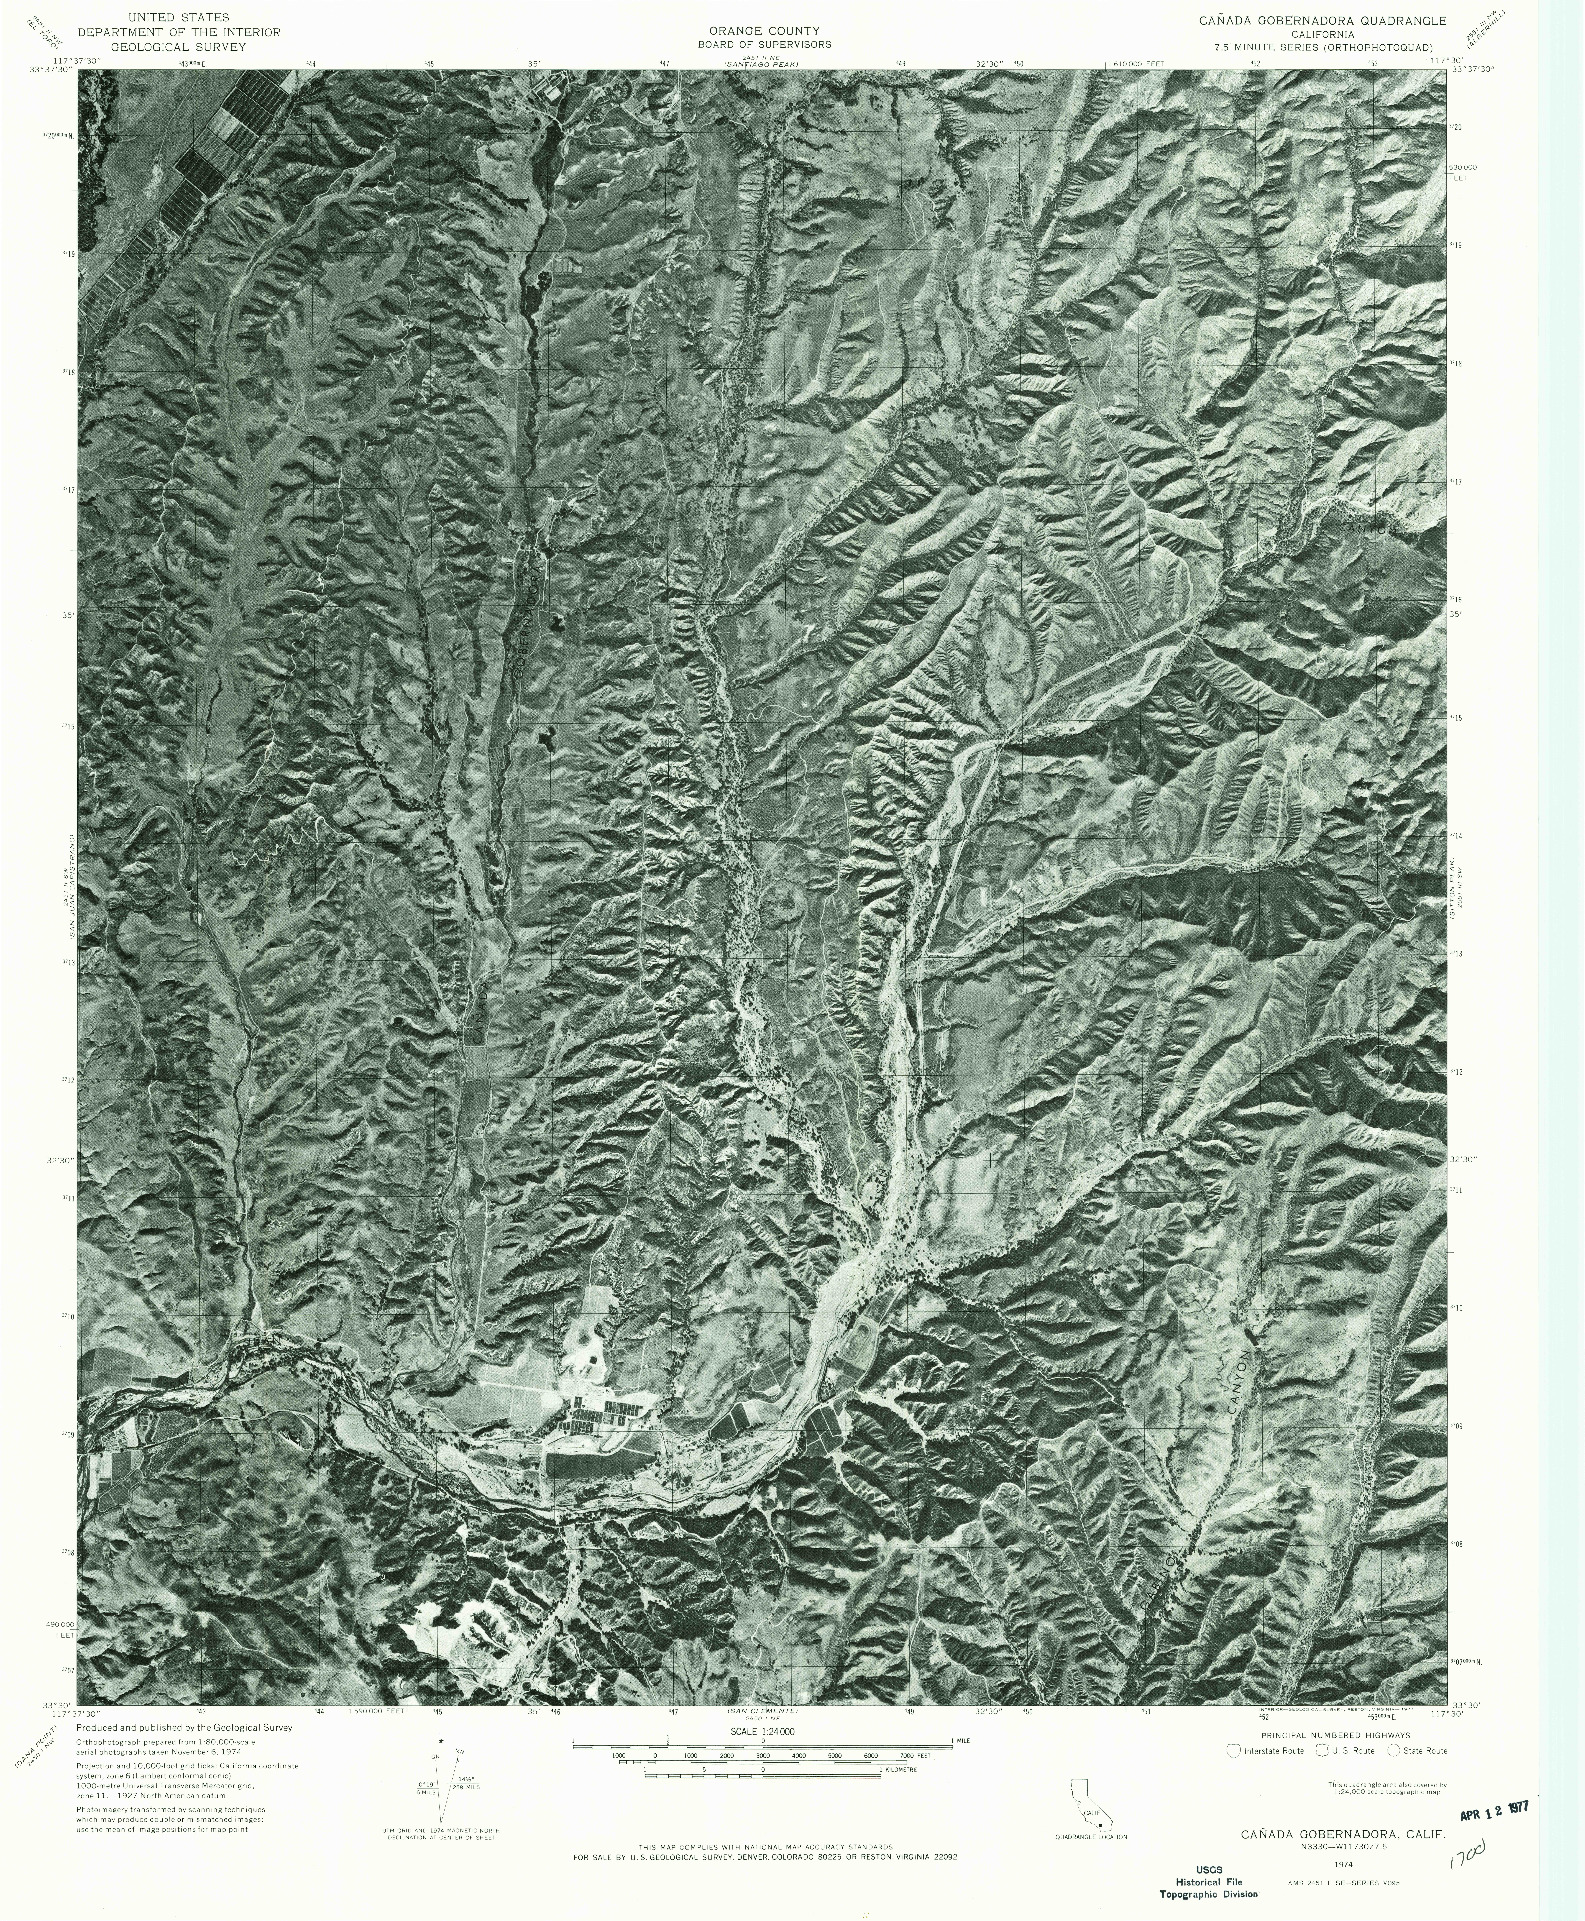 USGS 1:24000-SCALE QUADRANGLE FOR CANADA GOBERNADORA, CA 1974